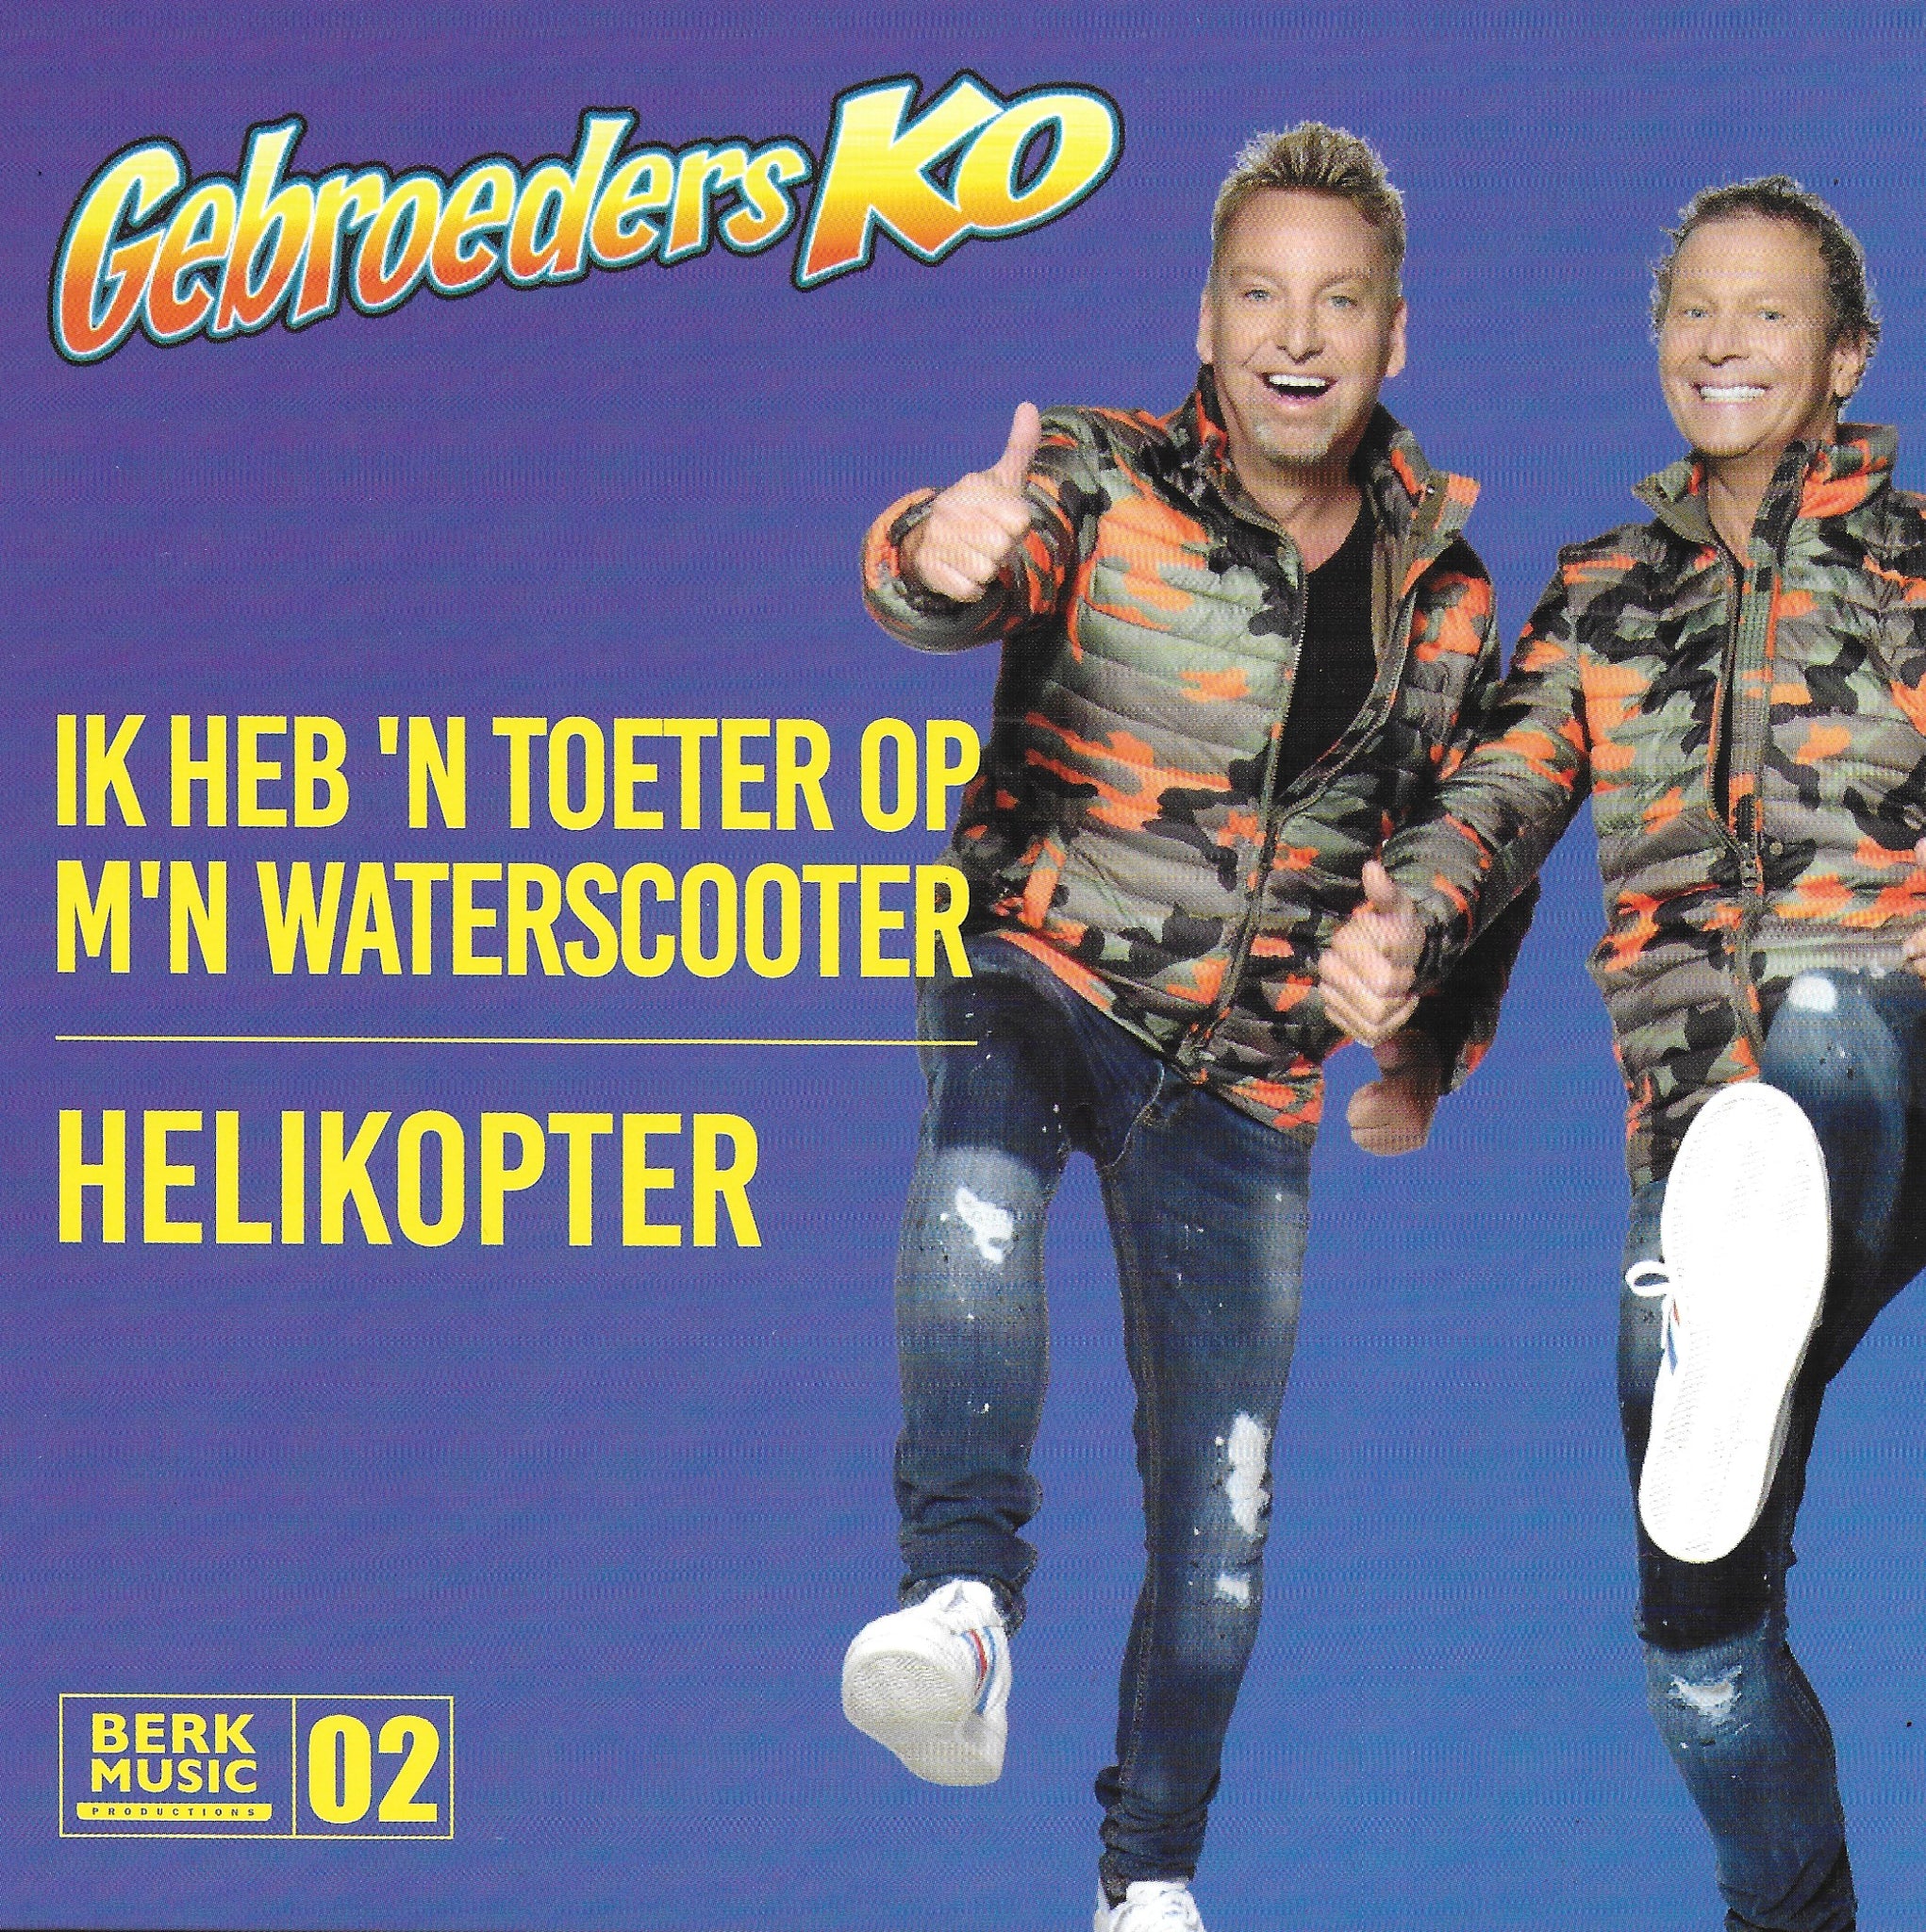 Gebroeders Ko - Ik heb 'n toeter op m'n waterscooter / Helikopter